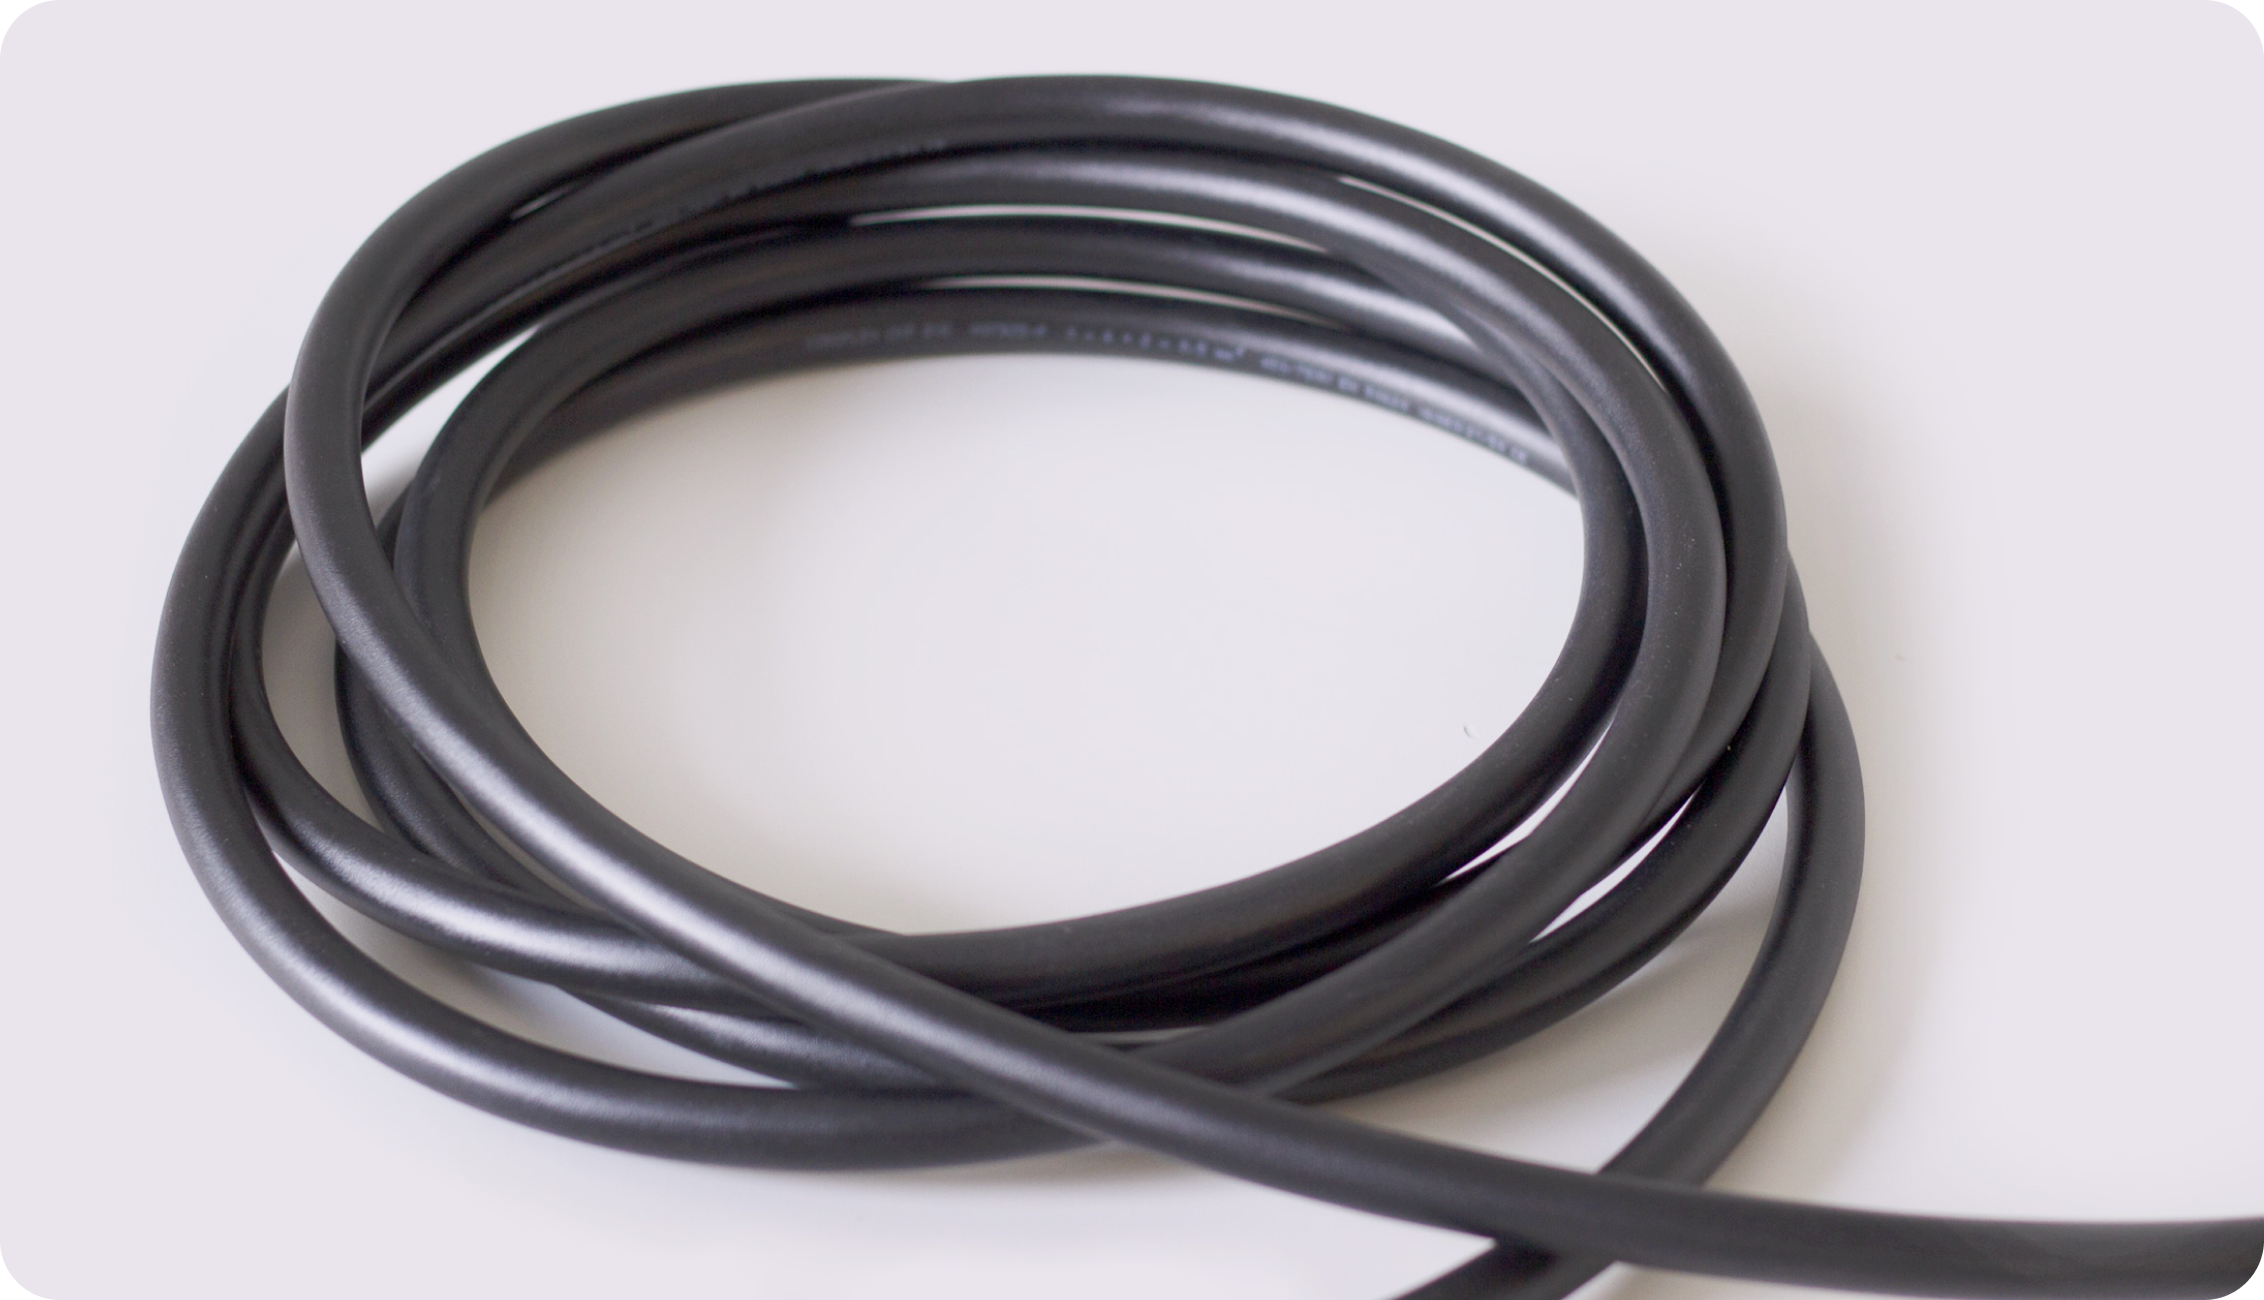 Comment choisir la longueur de mon câble de recharge ? – Mister EV